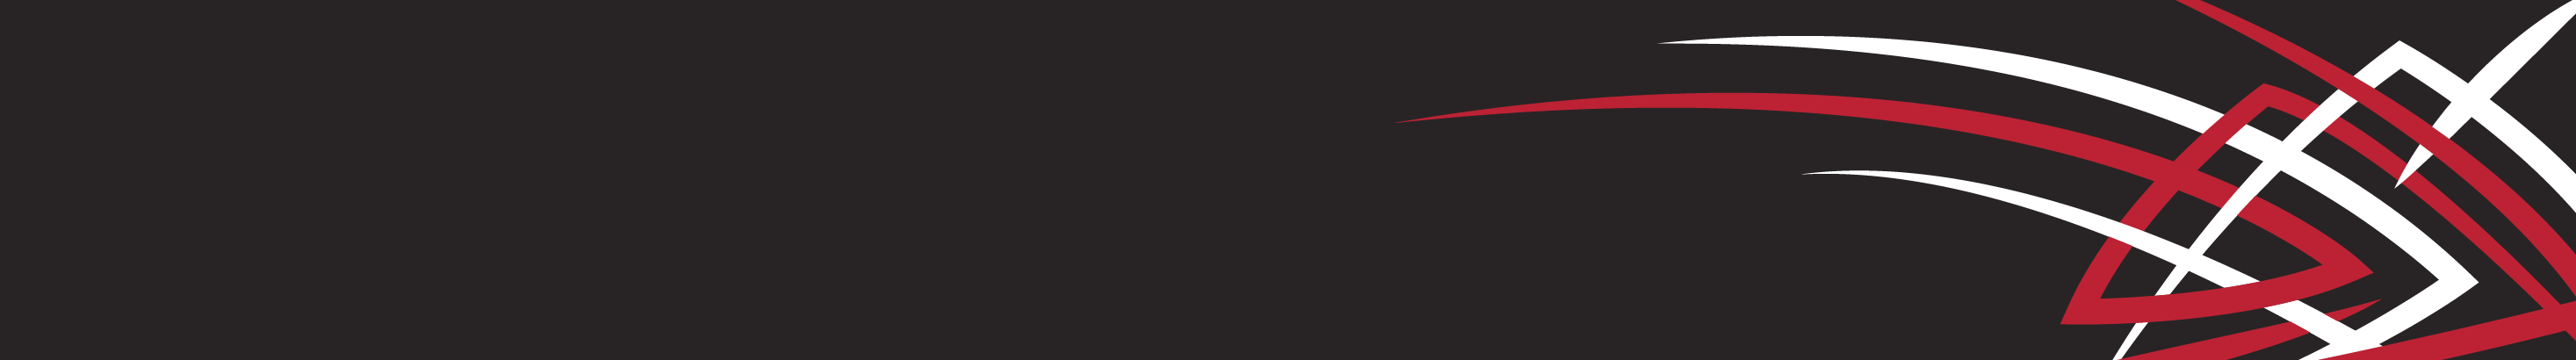 Alexander Kotvin's profile banner